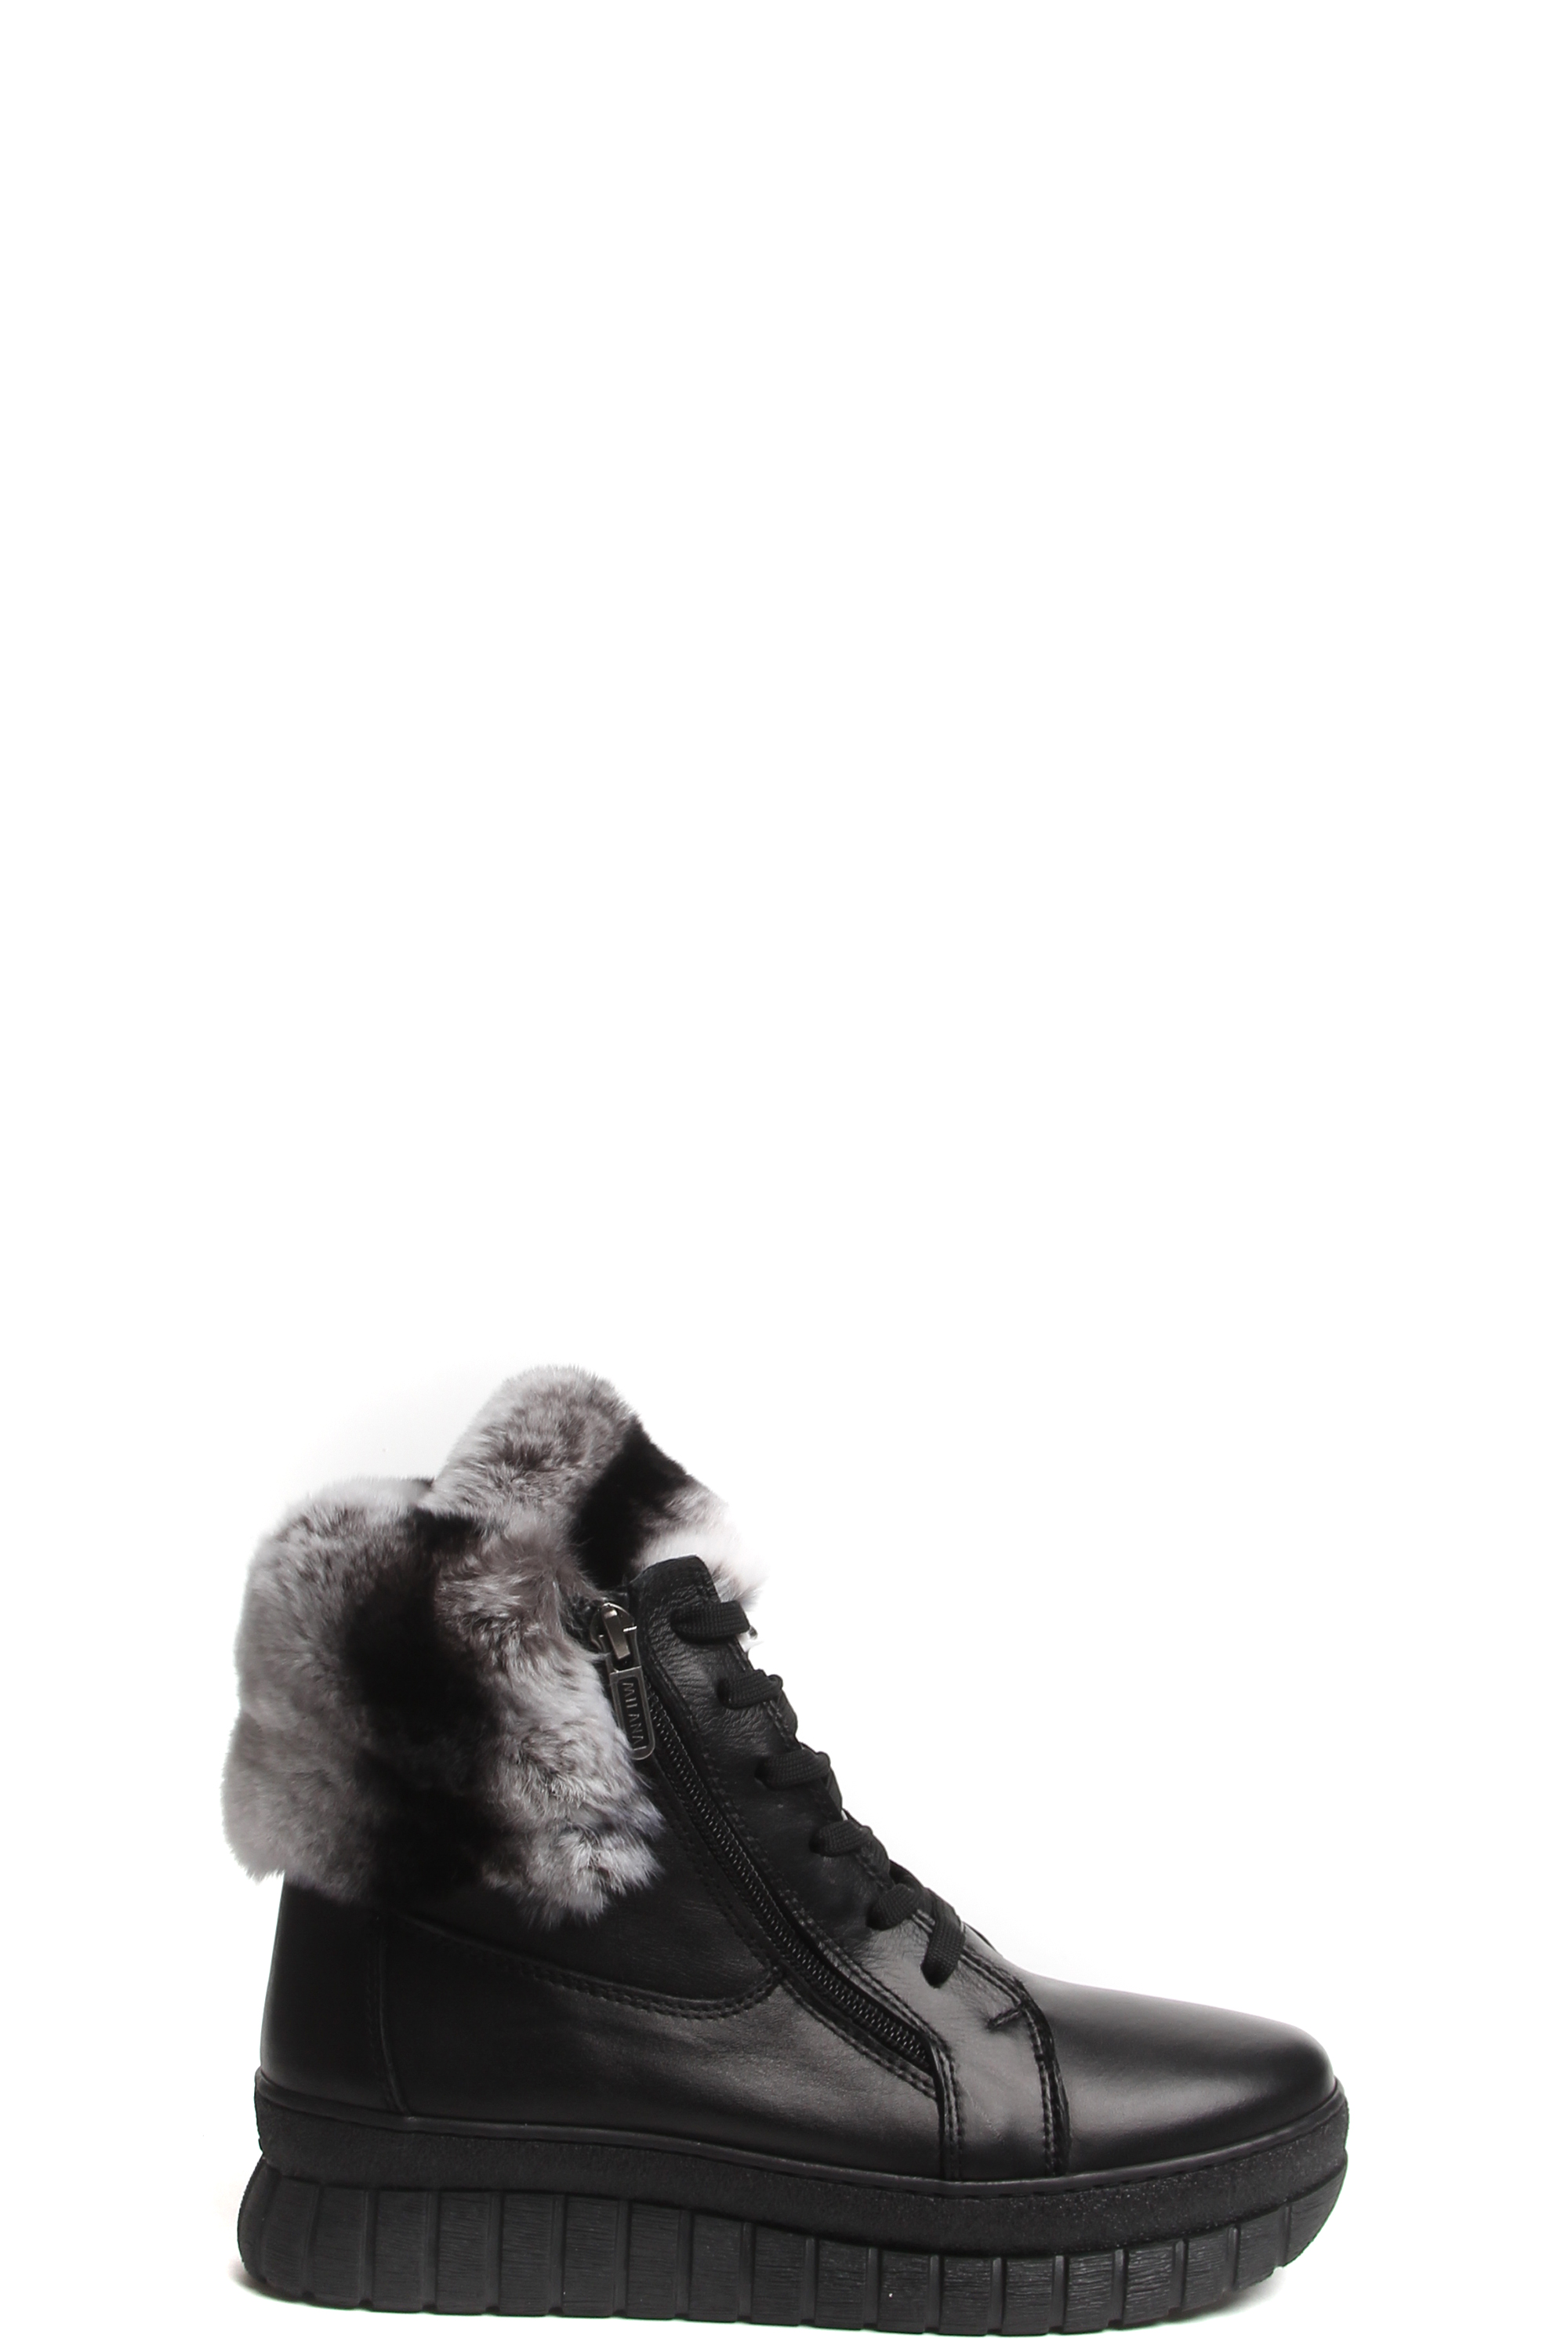 Ботинки MILANA 182370-1-110F черный - купить 13990